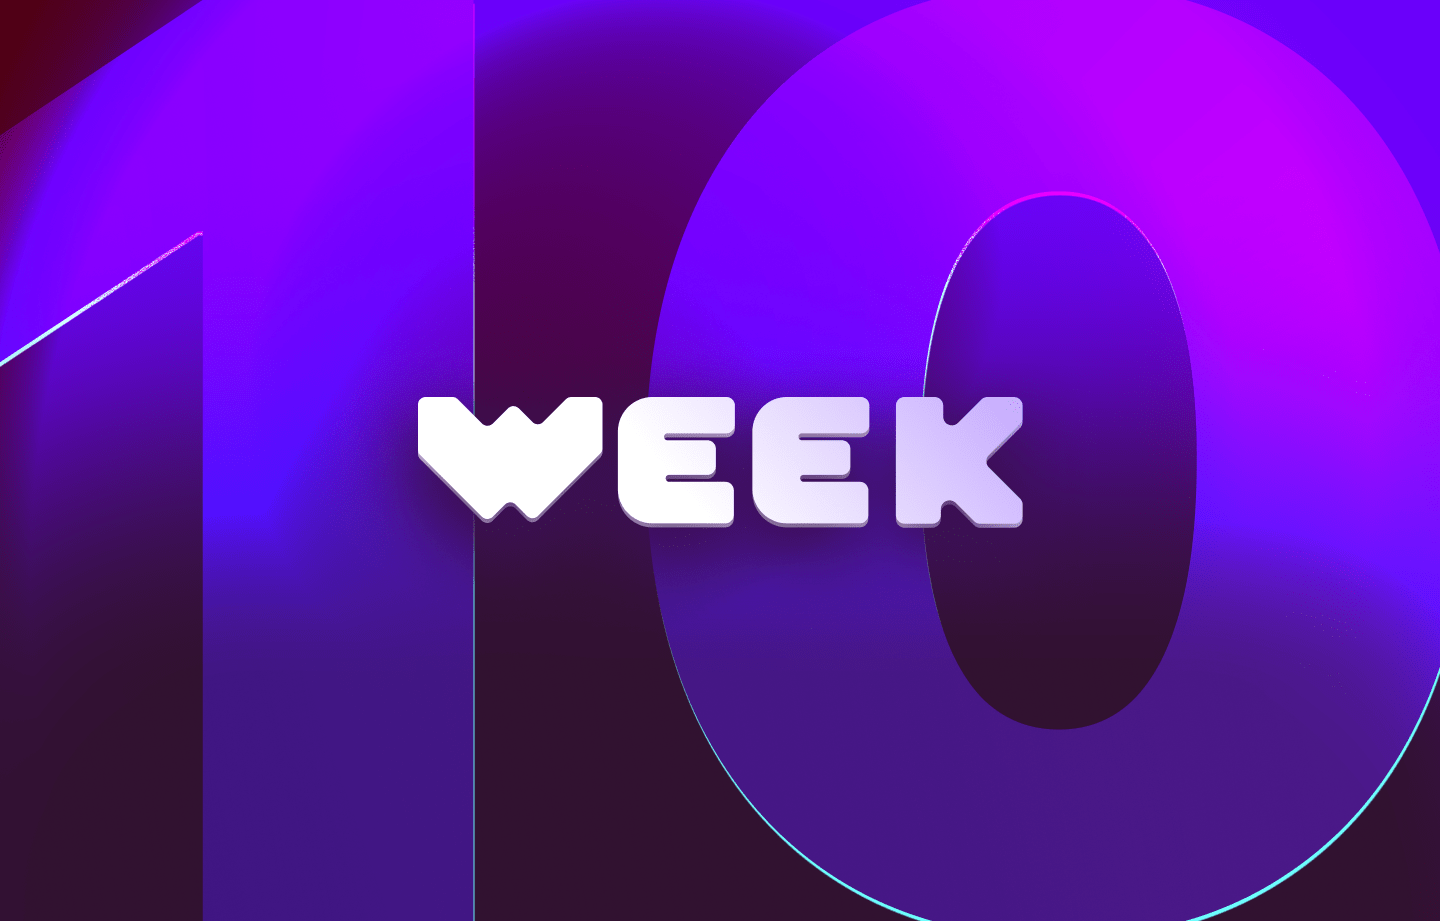 This week in web3 #10